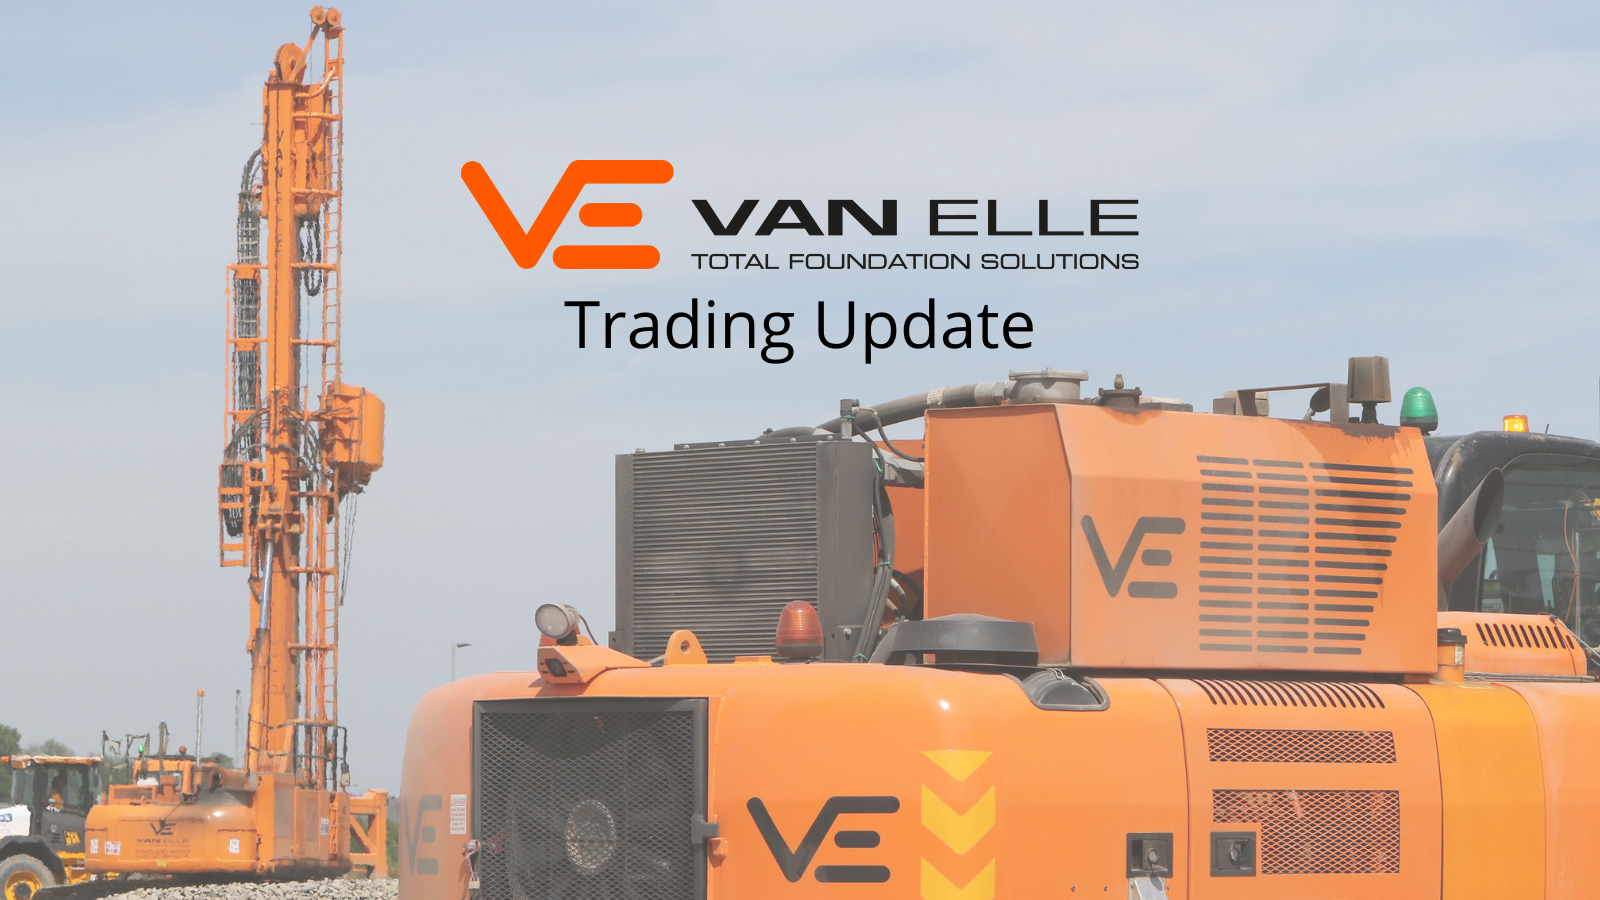 Van Elle Trading Update